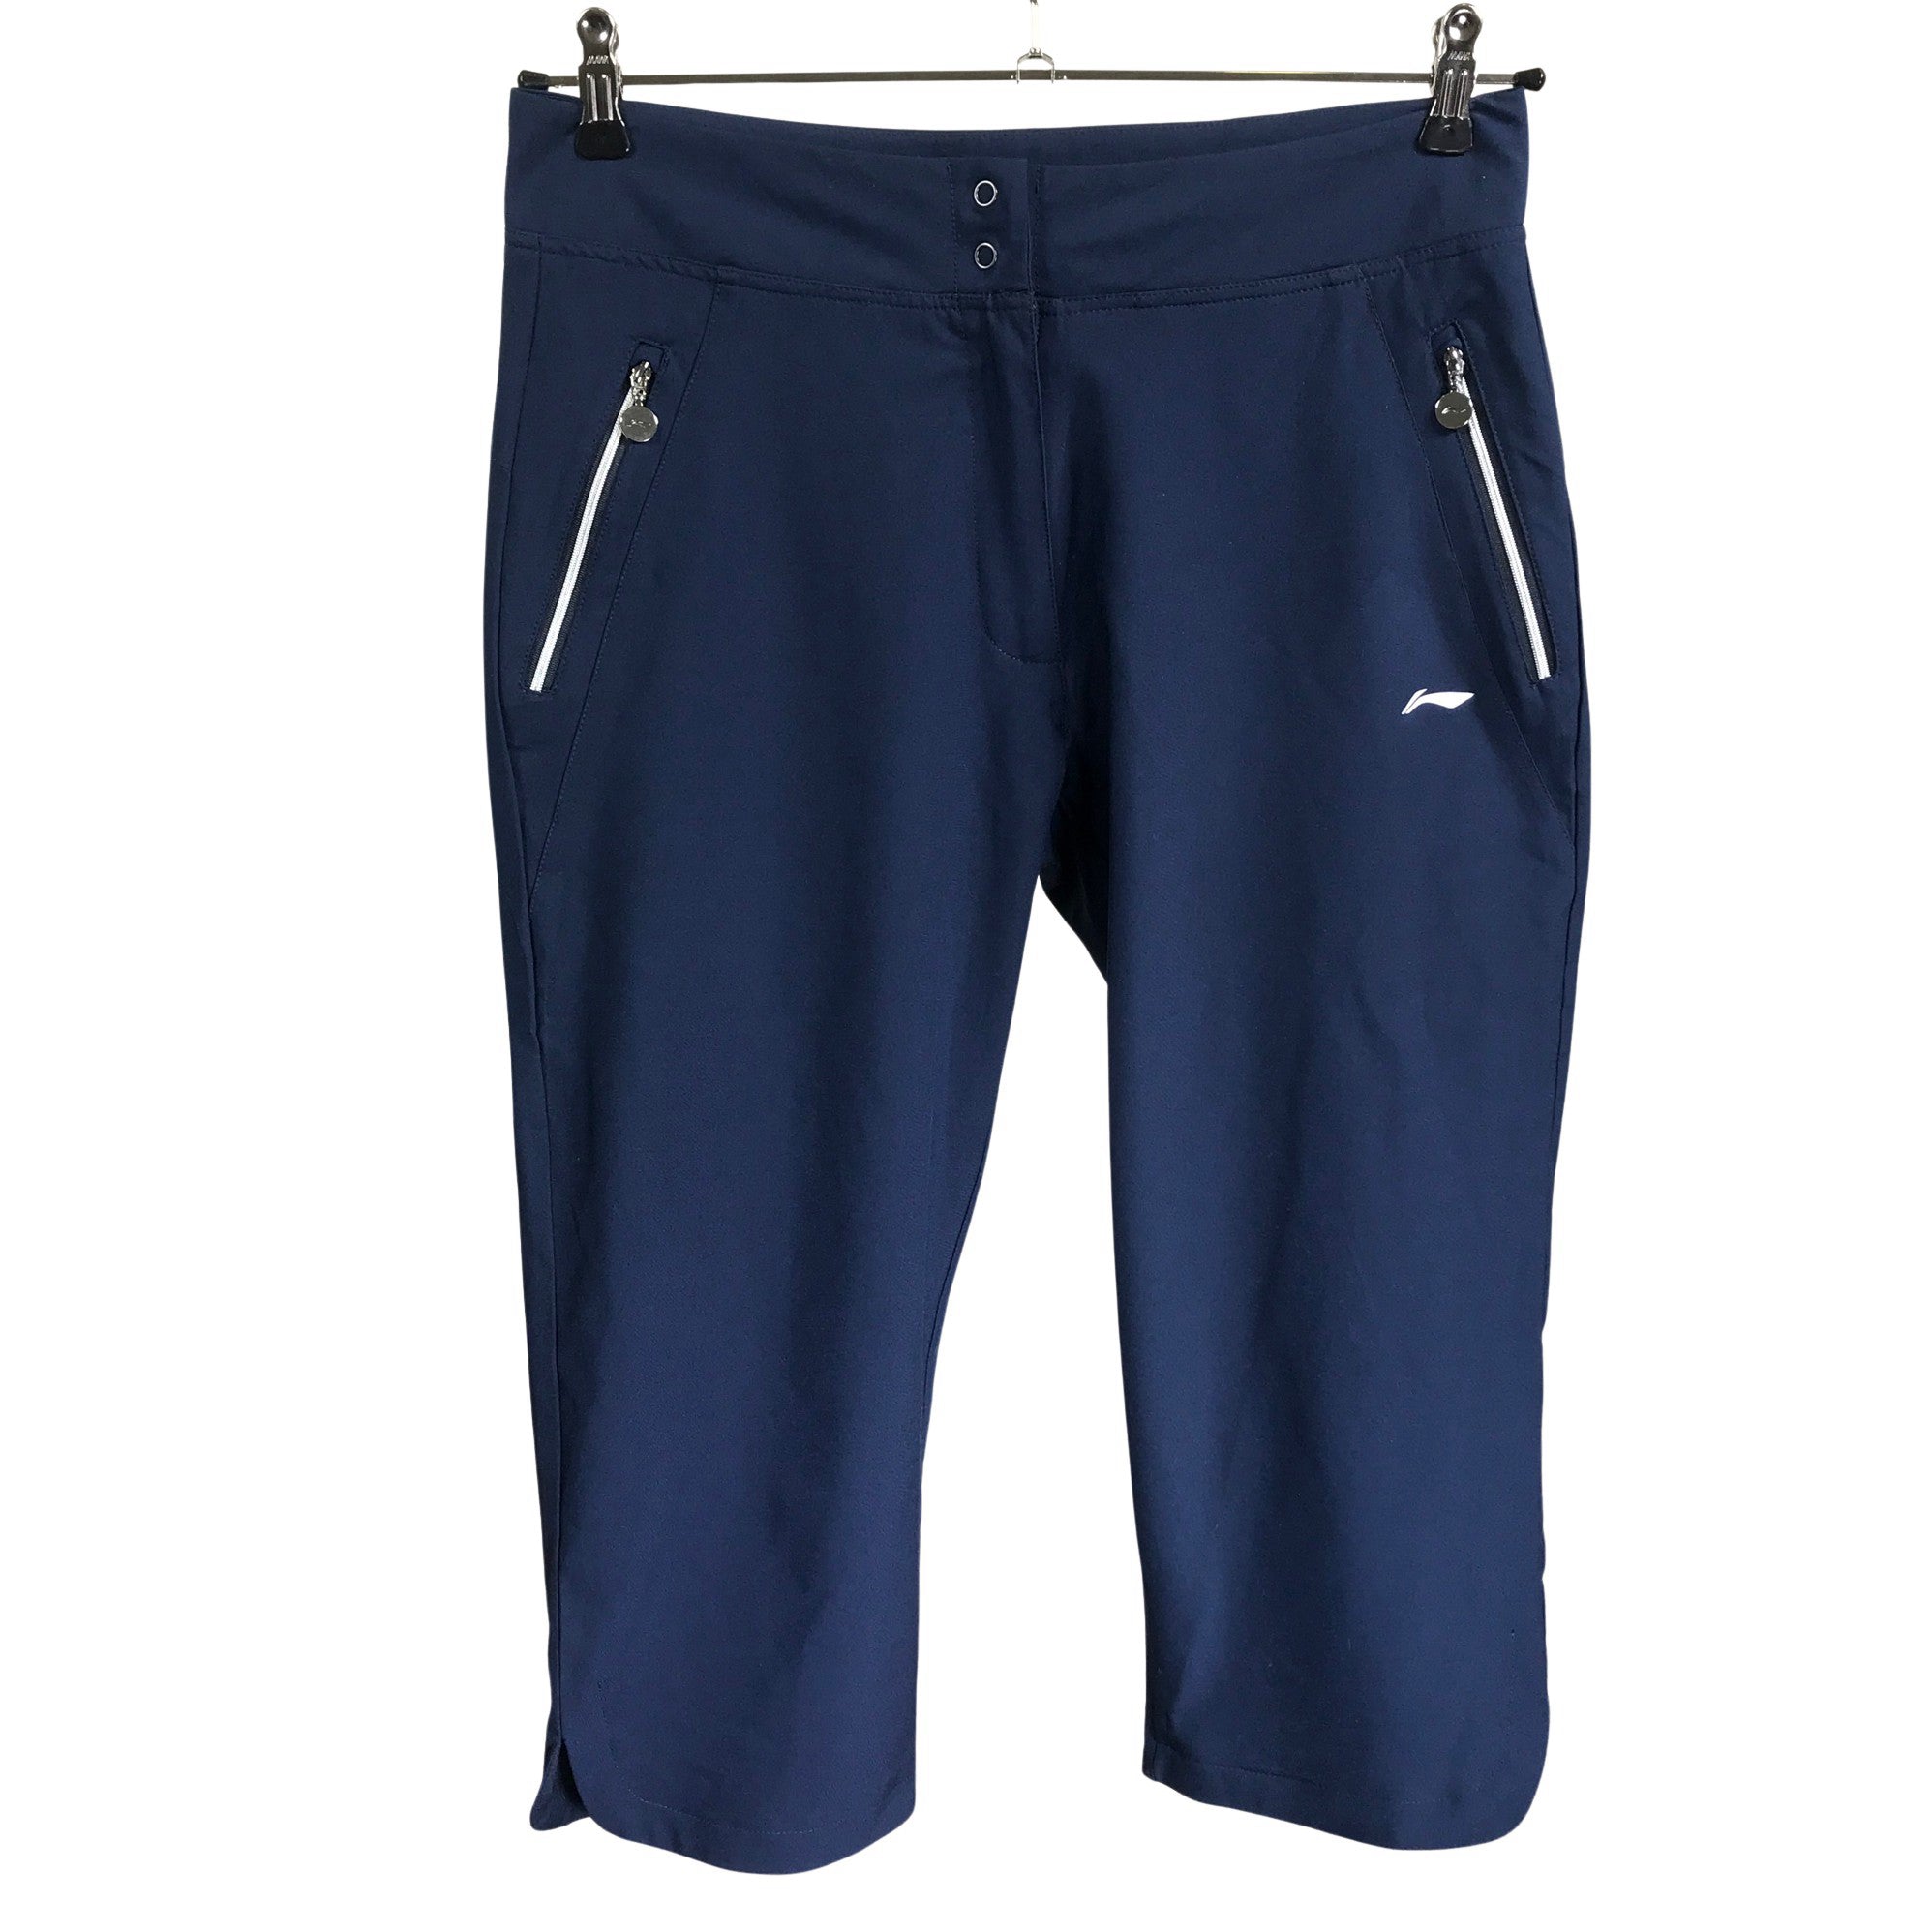 Women's Li-ning Sports capri pants, size 40 (Blue), athletic capri ...